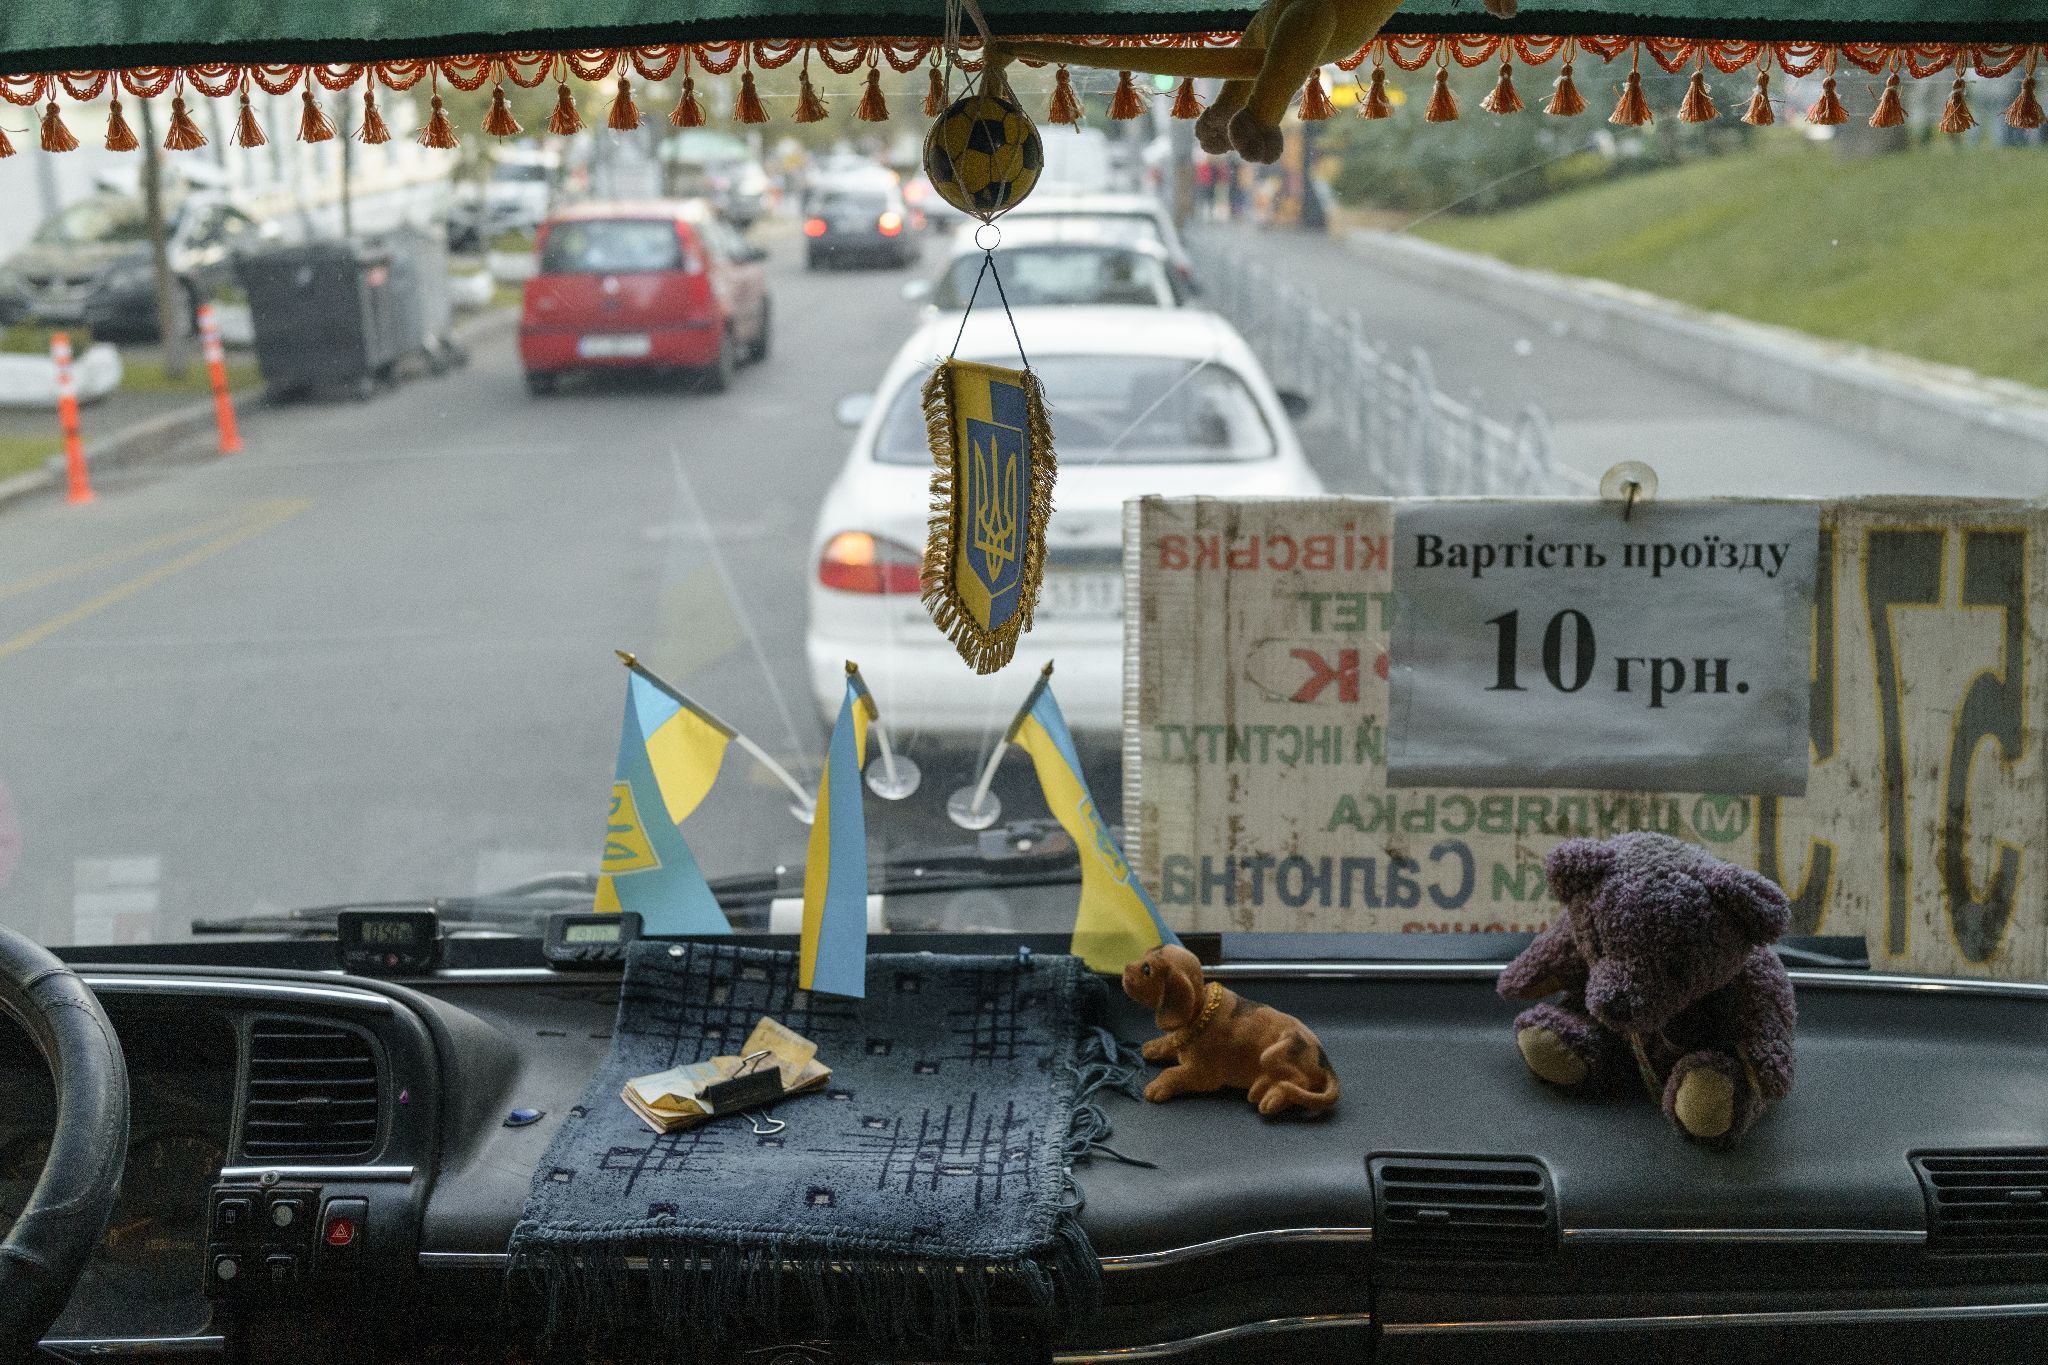 Декор в київських автобусах, Київ, жовтень 2021 року. Фото: Дмитро Пруткін